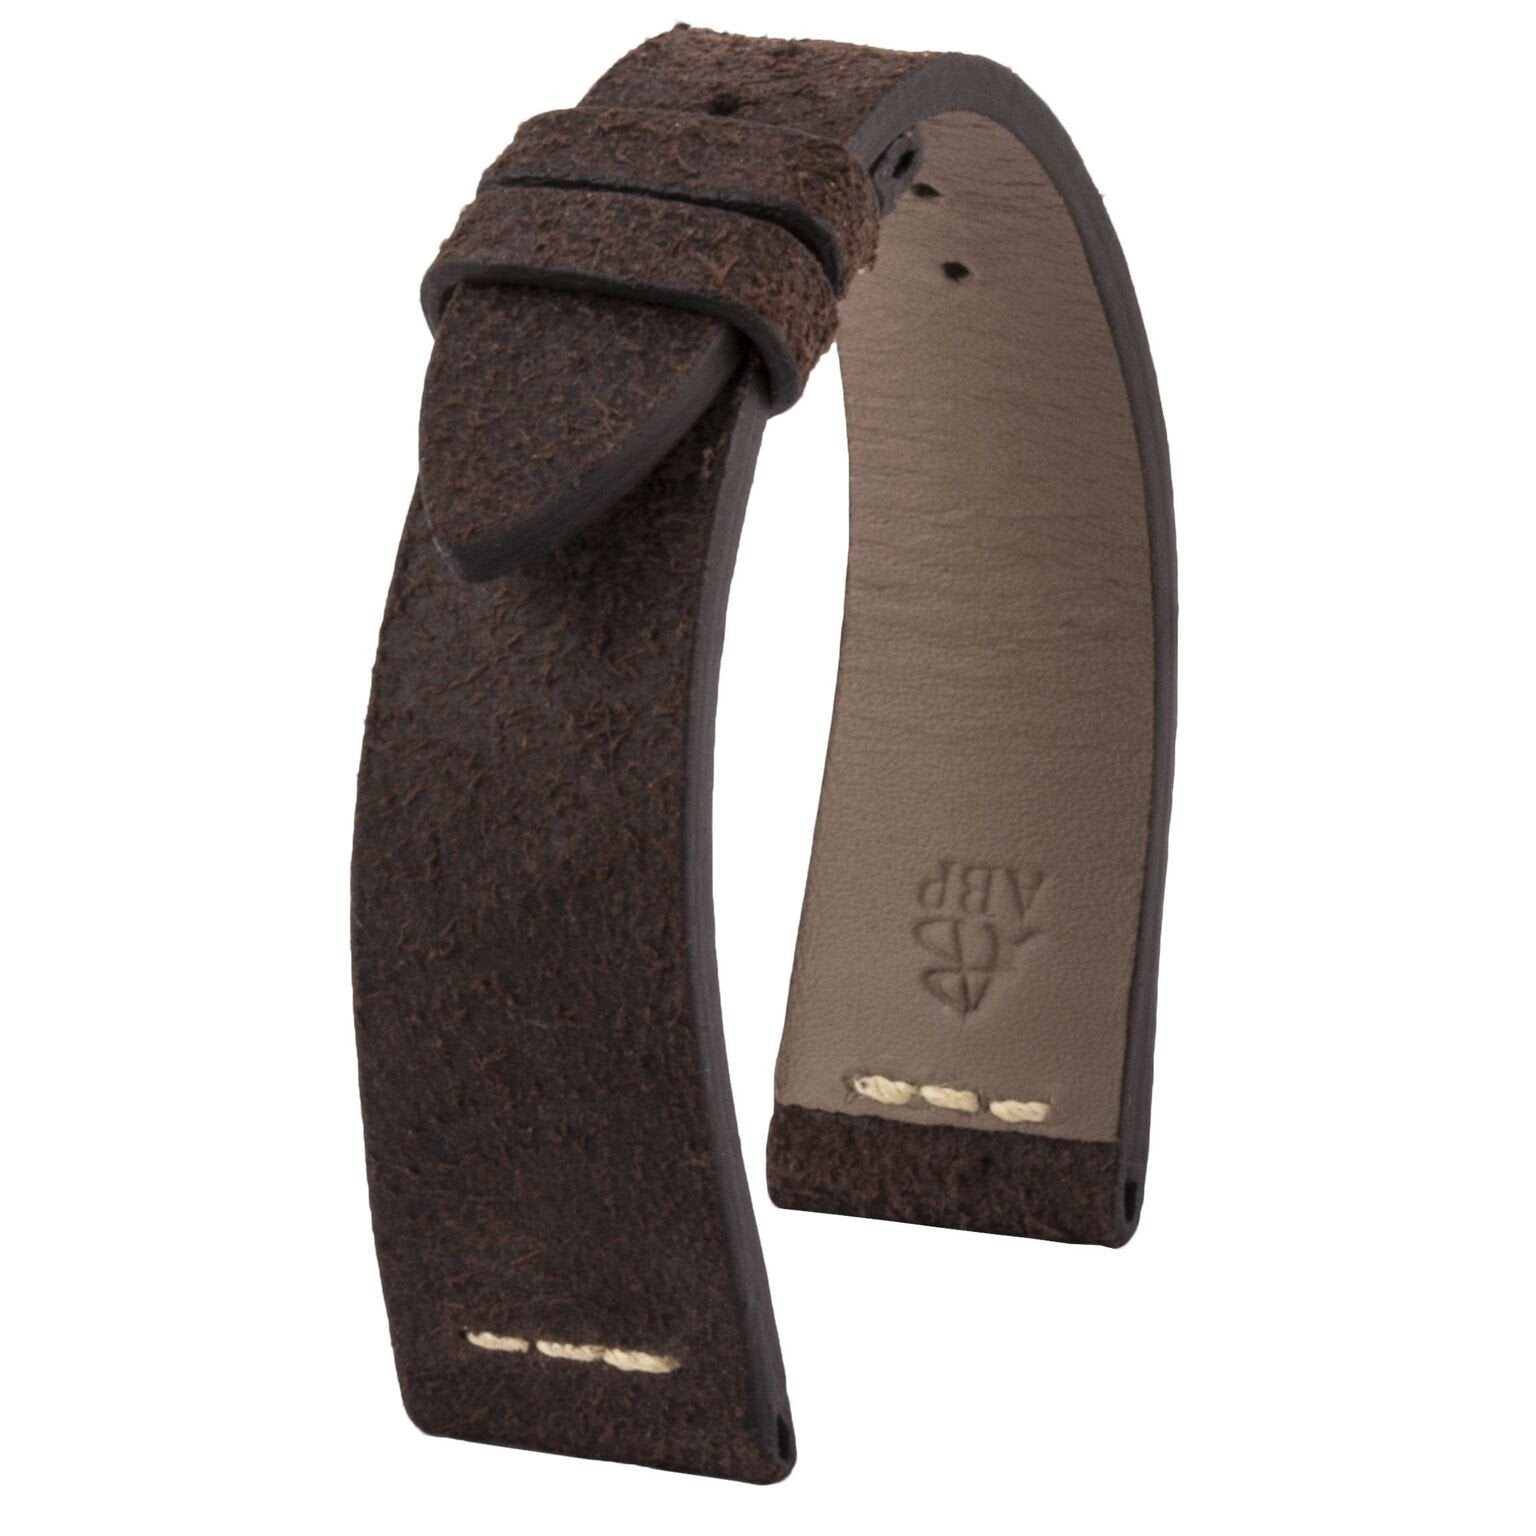 Rolex Daytona - Bracelet montre cuir - Veau (noir, blanc, marron, bleu) - watch band leather strap - ABP Concept -